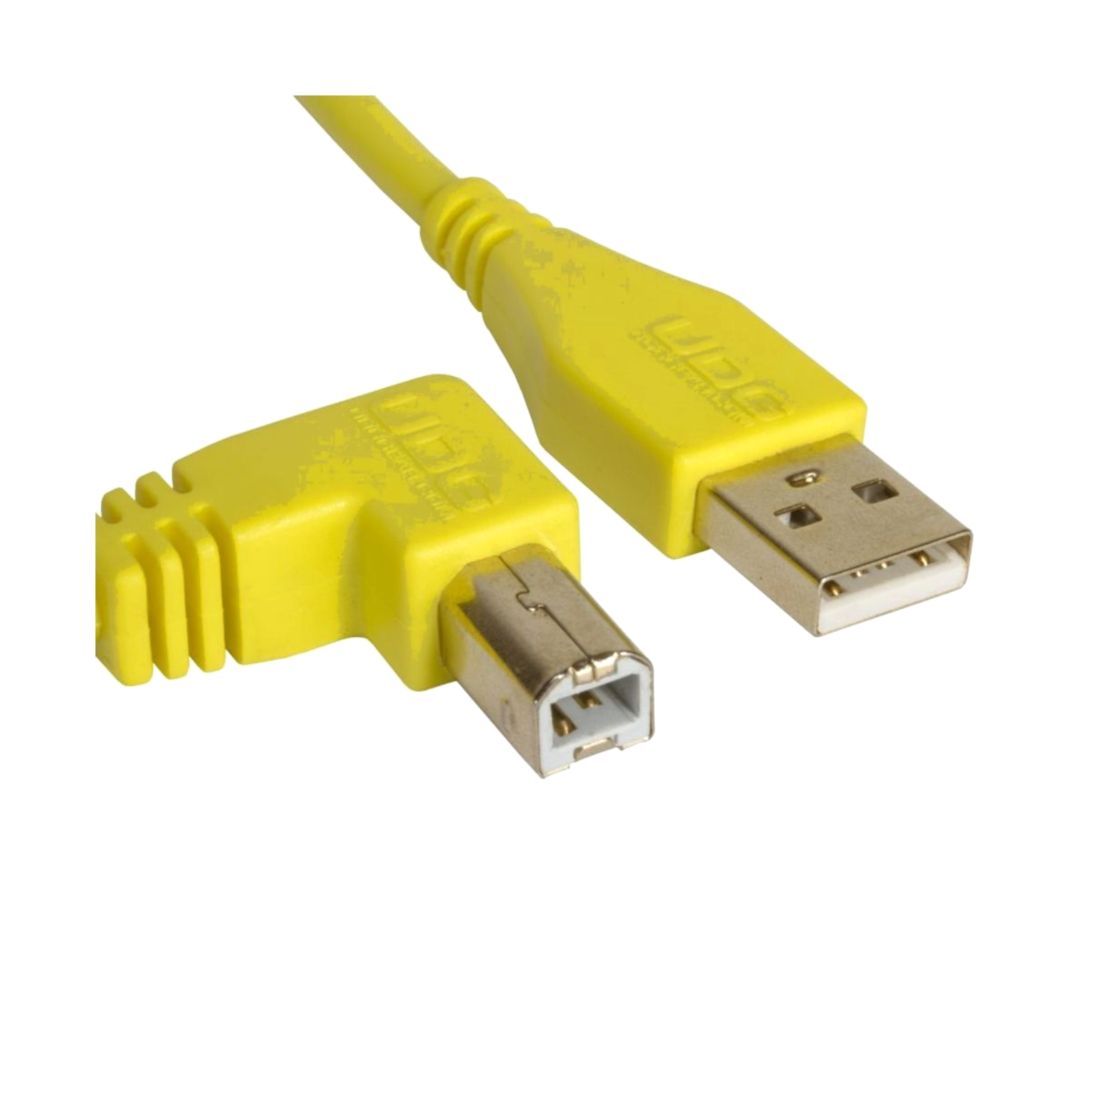 Аудиокабель UDG U95005YL Usb 2.0 AB Angled, желтый кабель sata generic 6gb sata3 угловой с защёлками 40см